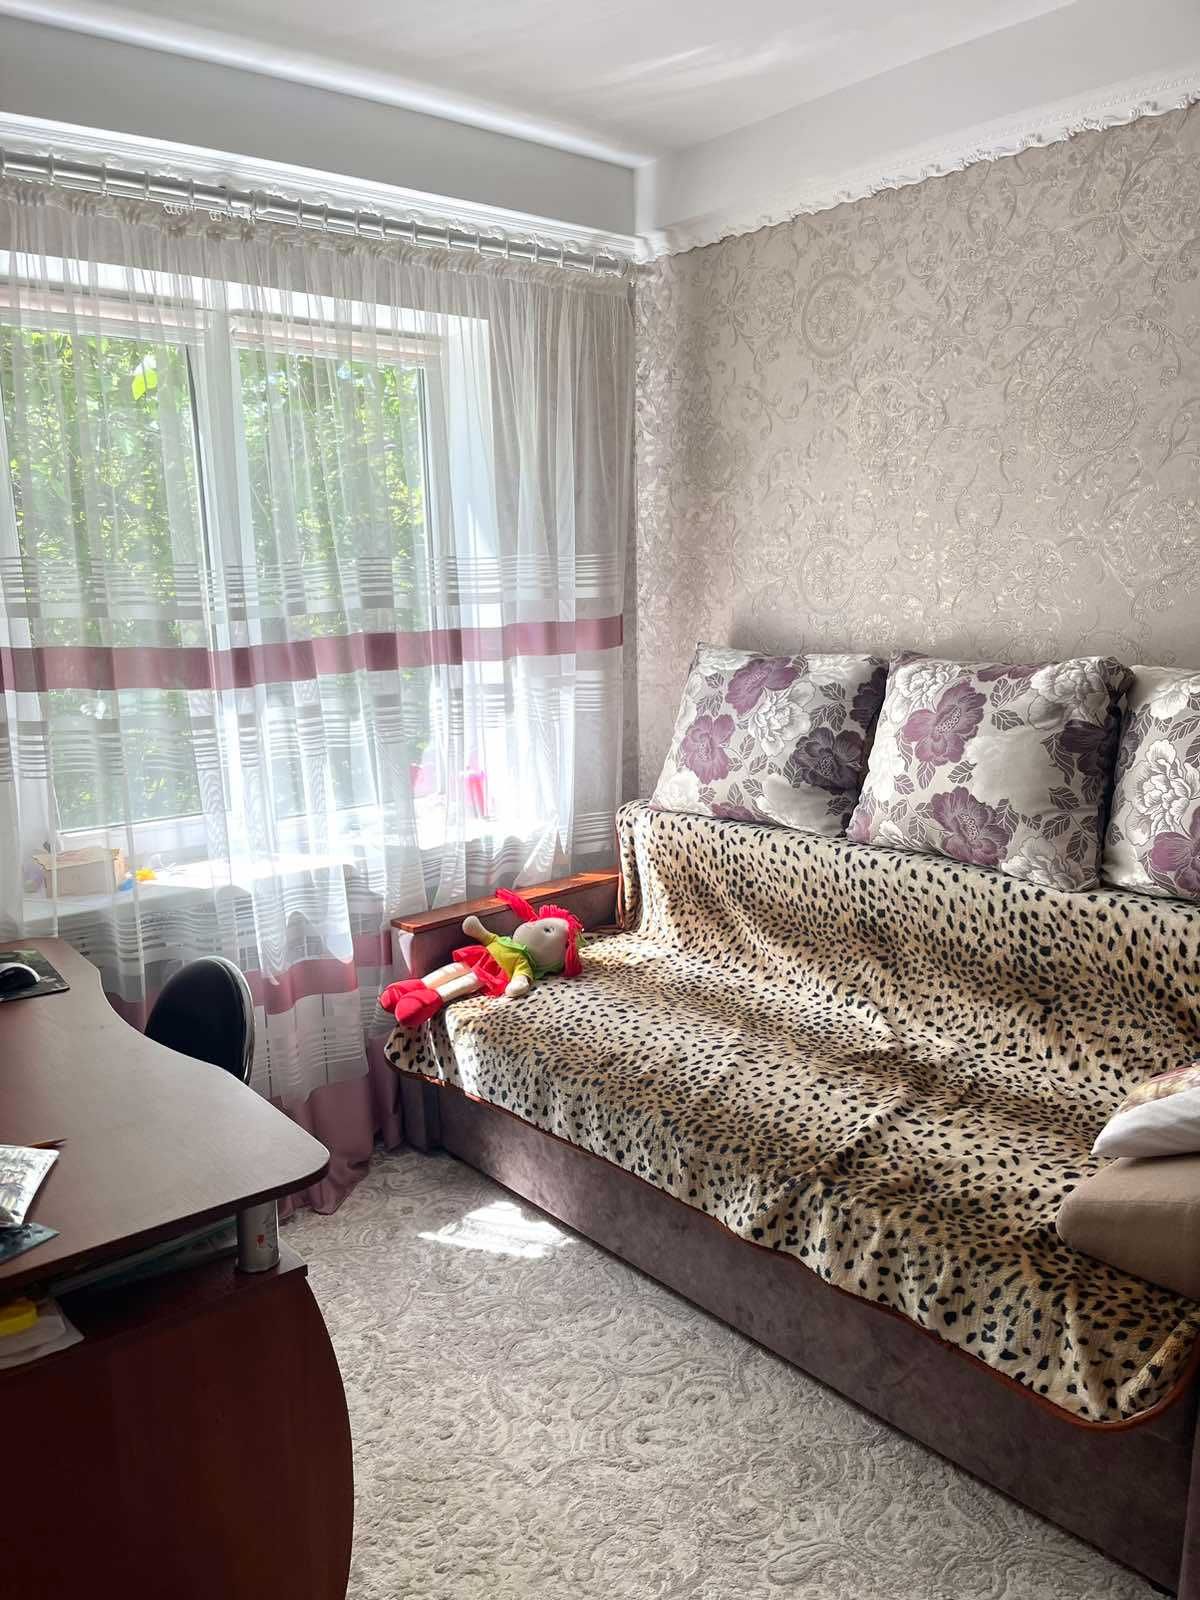 Продается 2 ком квартира в Коммунарском районе по ул Космическая